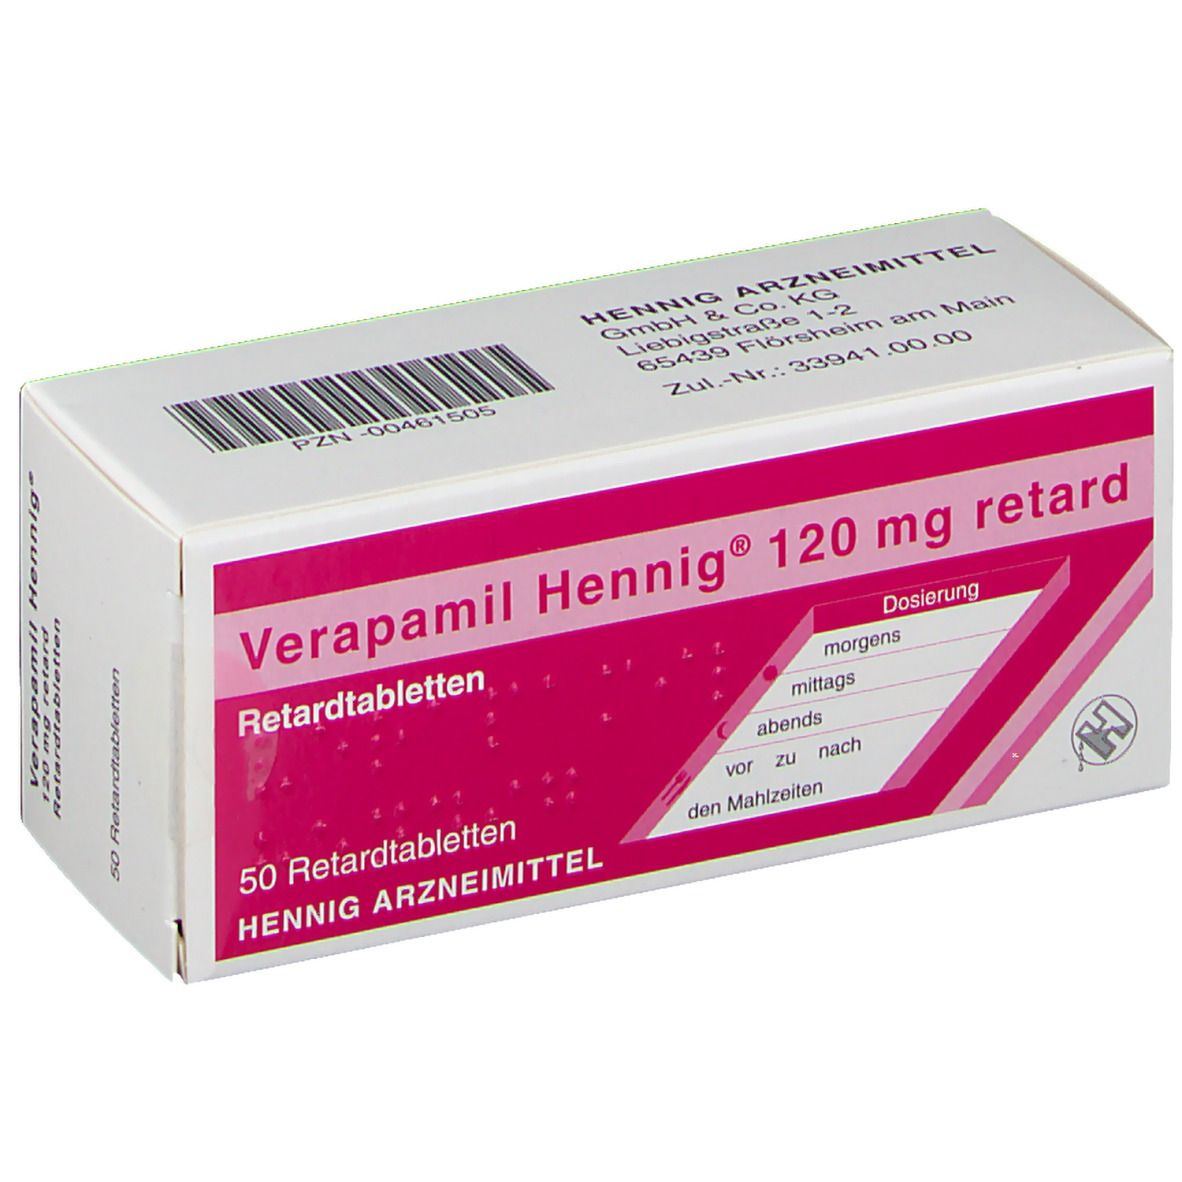 Verapamil Hennig® 120 mg